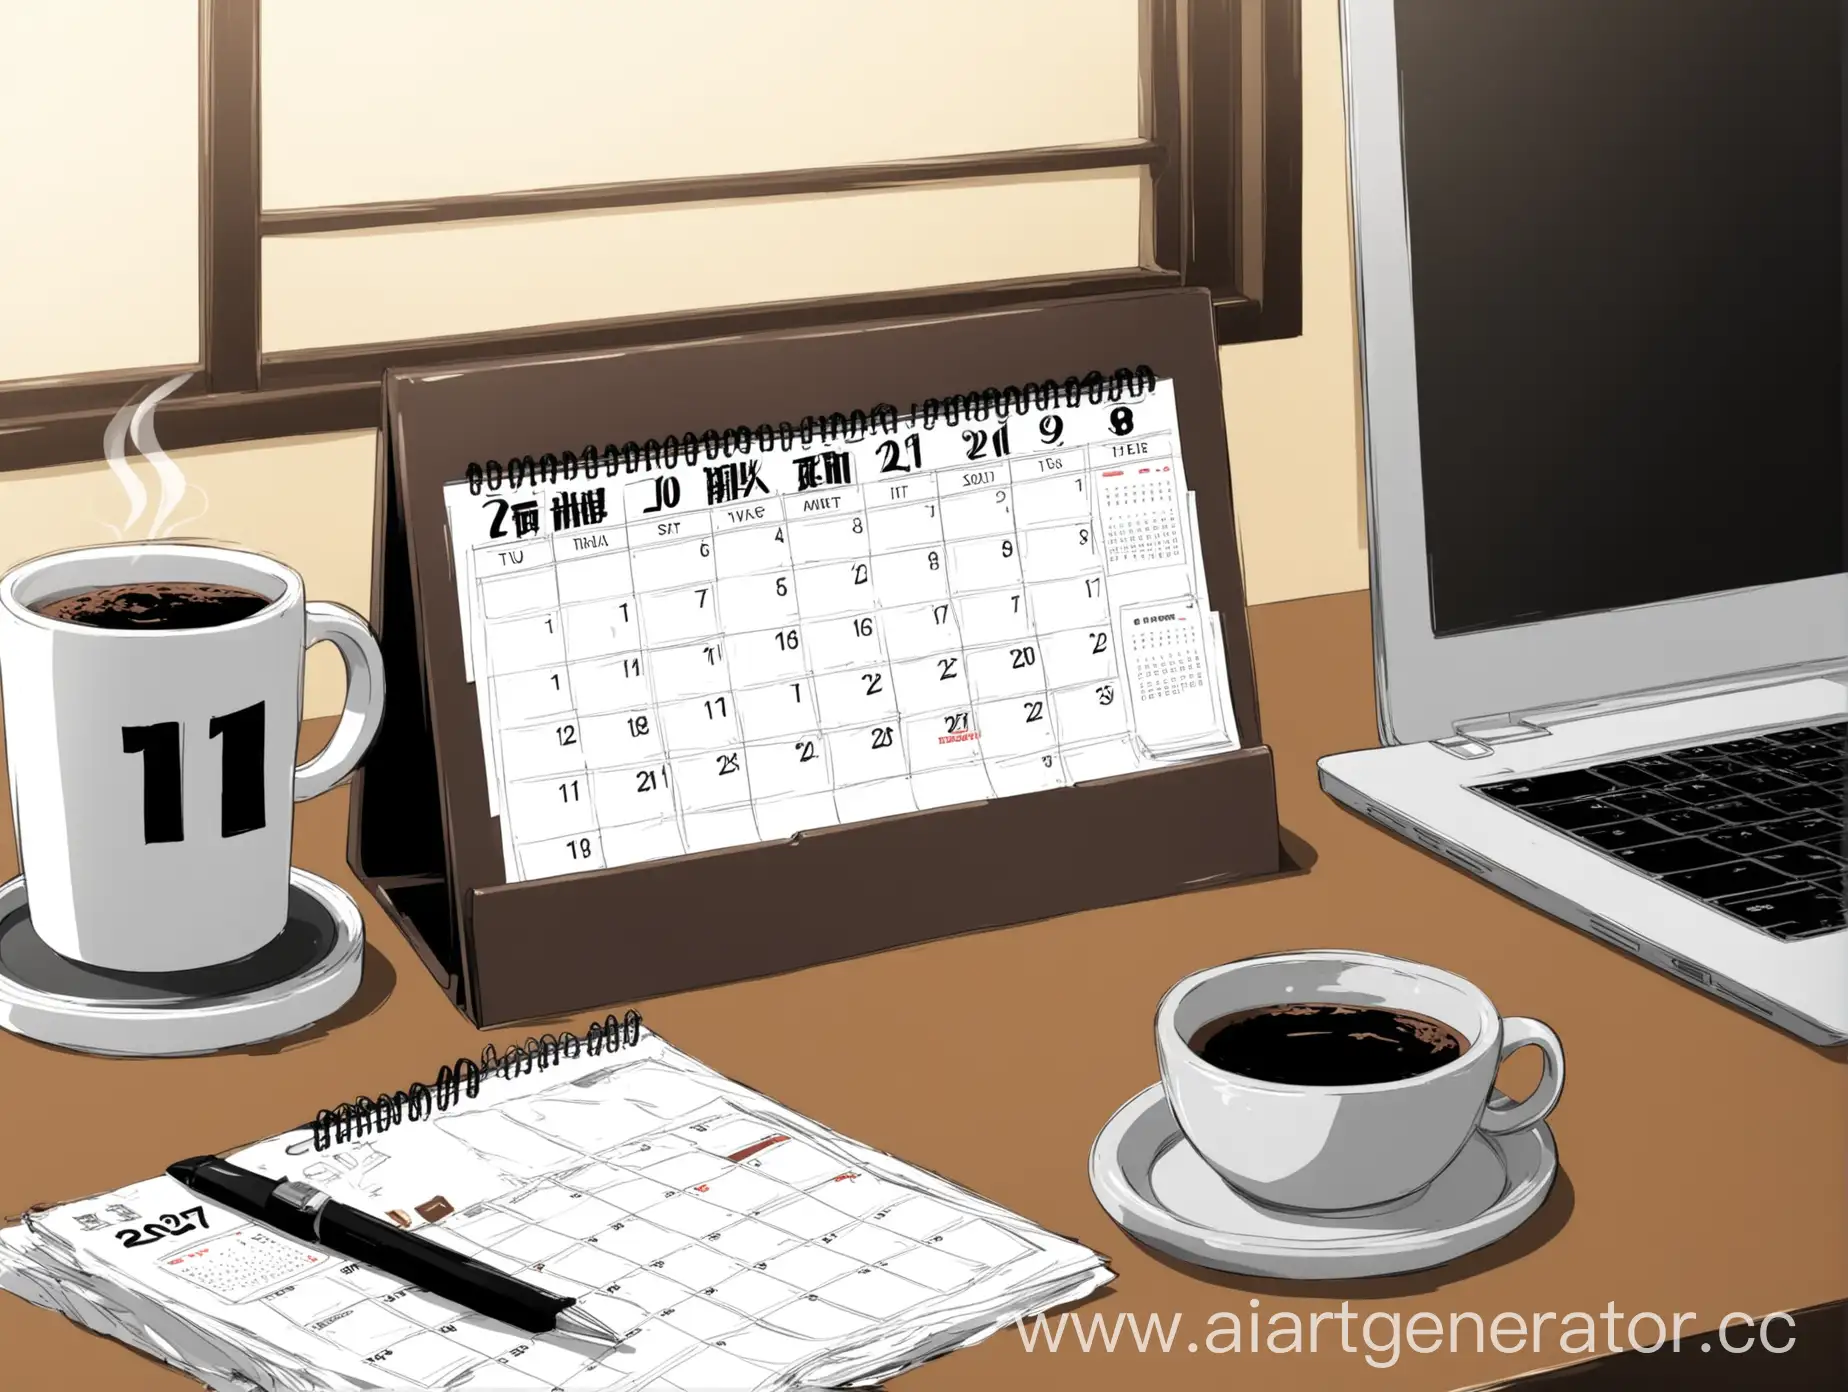 настольный календарь стоит на столе, рядом стоит кружка кофе, пепельница и ноутбук, стиль аниме